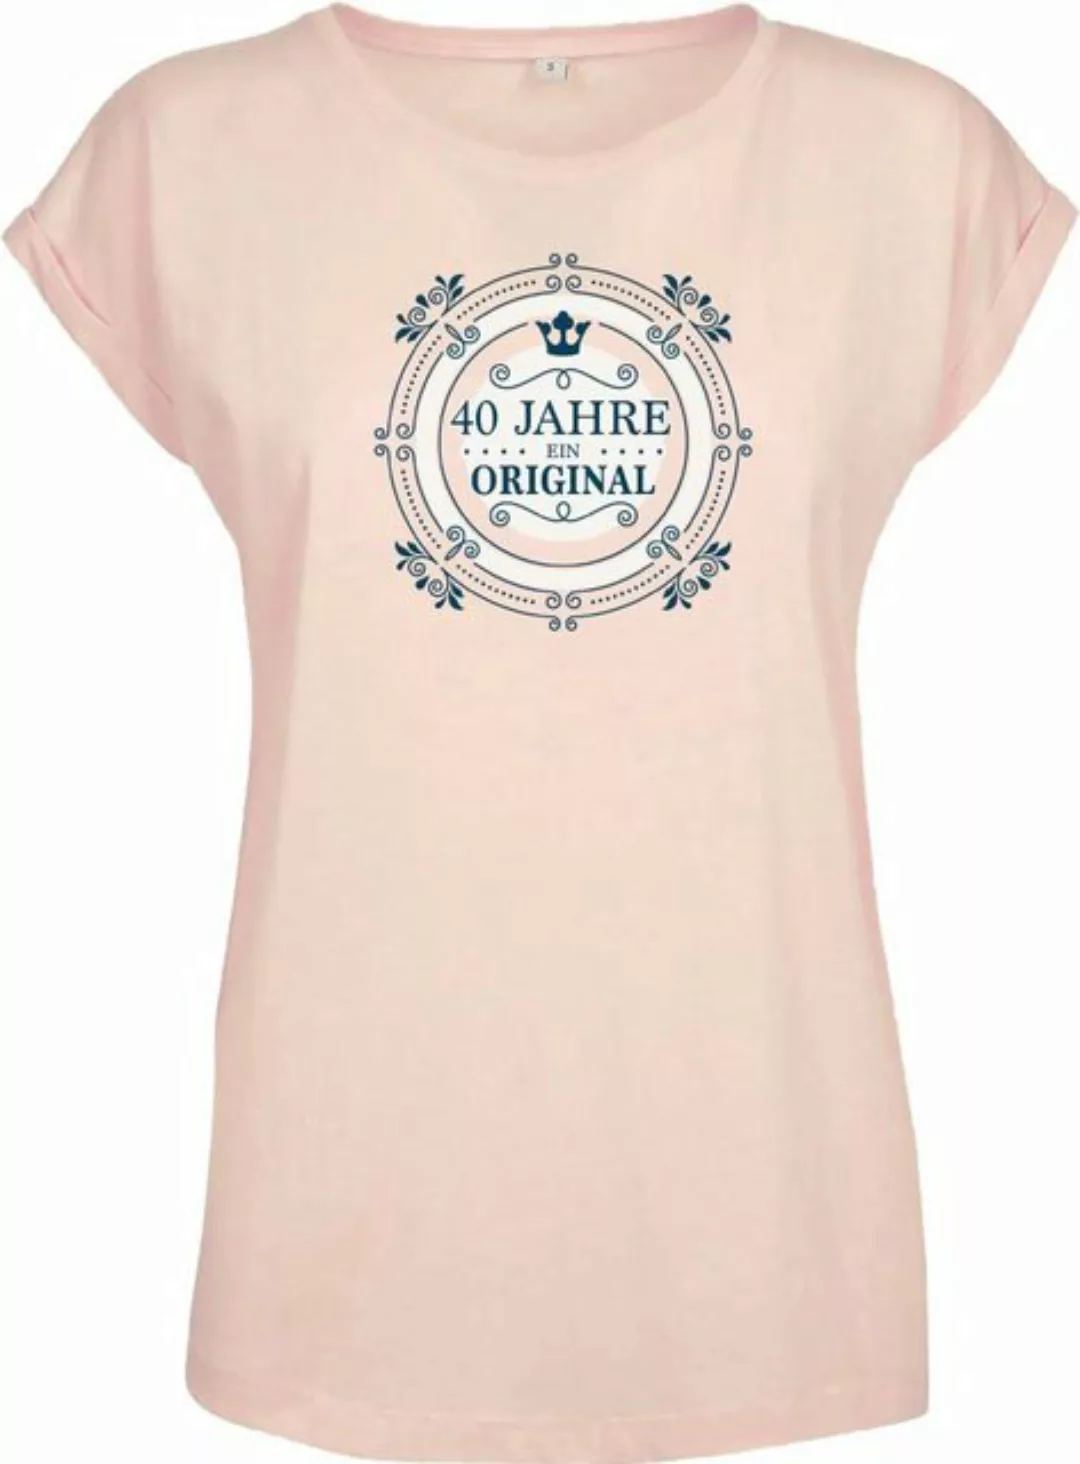 Baddery Print-Shirt Geburtstagsgeschenk für Frauen : 40 Jahre Ein Original günstig online kaufen